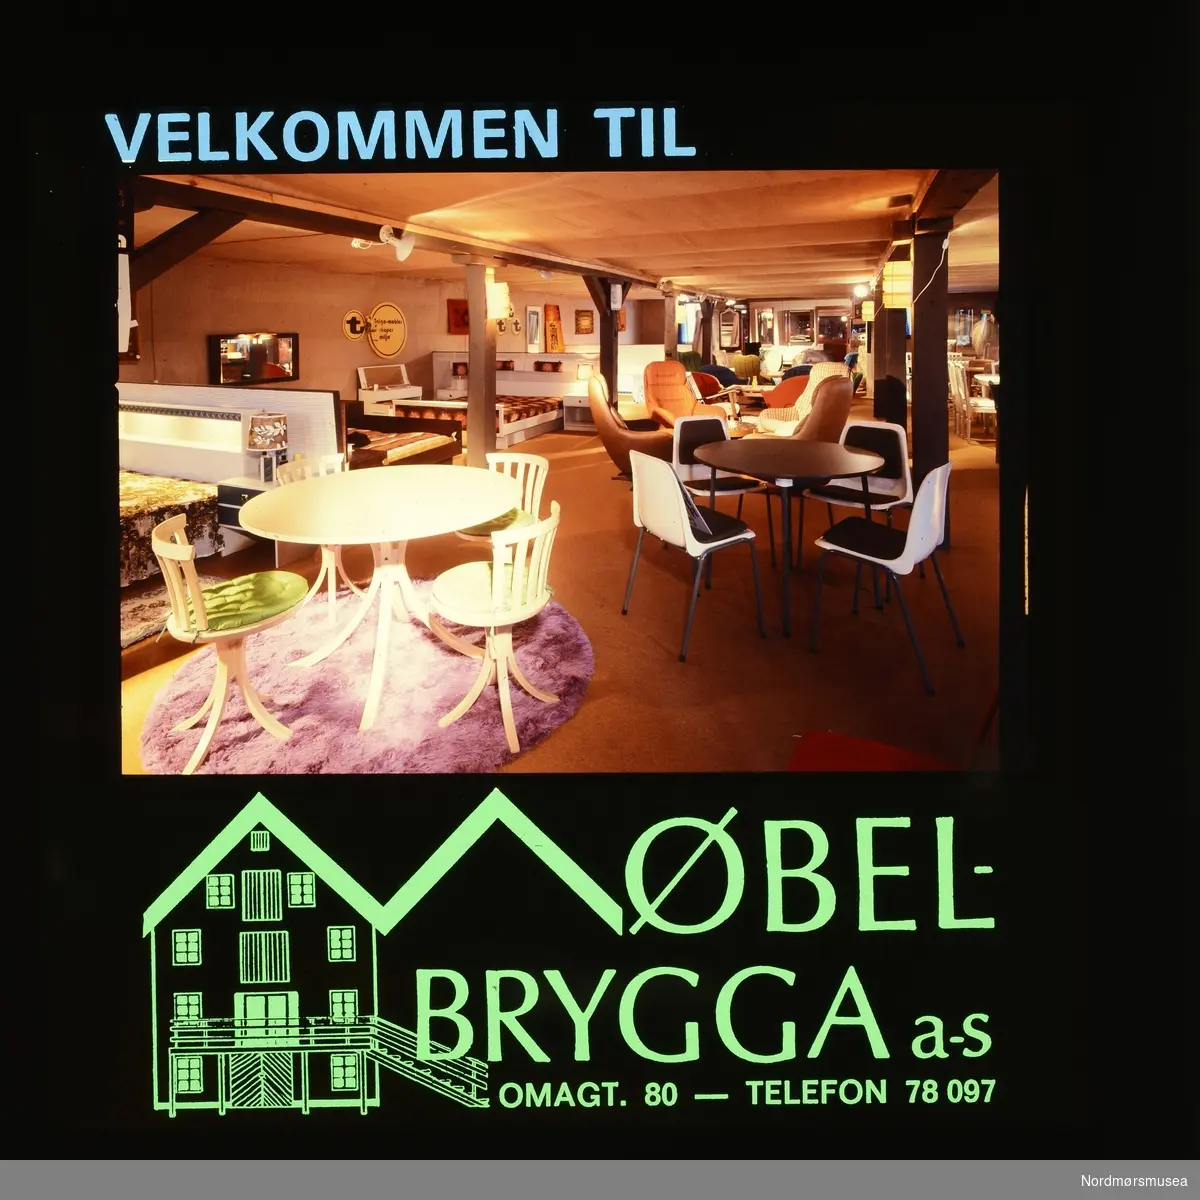 "Velkommen til Møbelbrygga a-s. Omagt. 80 - Telefon 78 097" Fra en samling med kinoreklame i Kristiansund. Giver er Erling Sæther. Fra Nordmøre museums fotosamlinger.